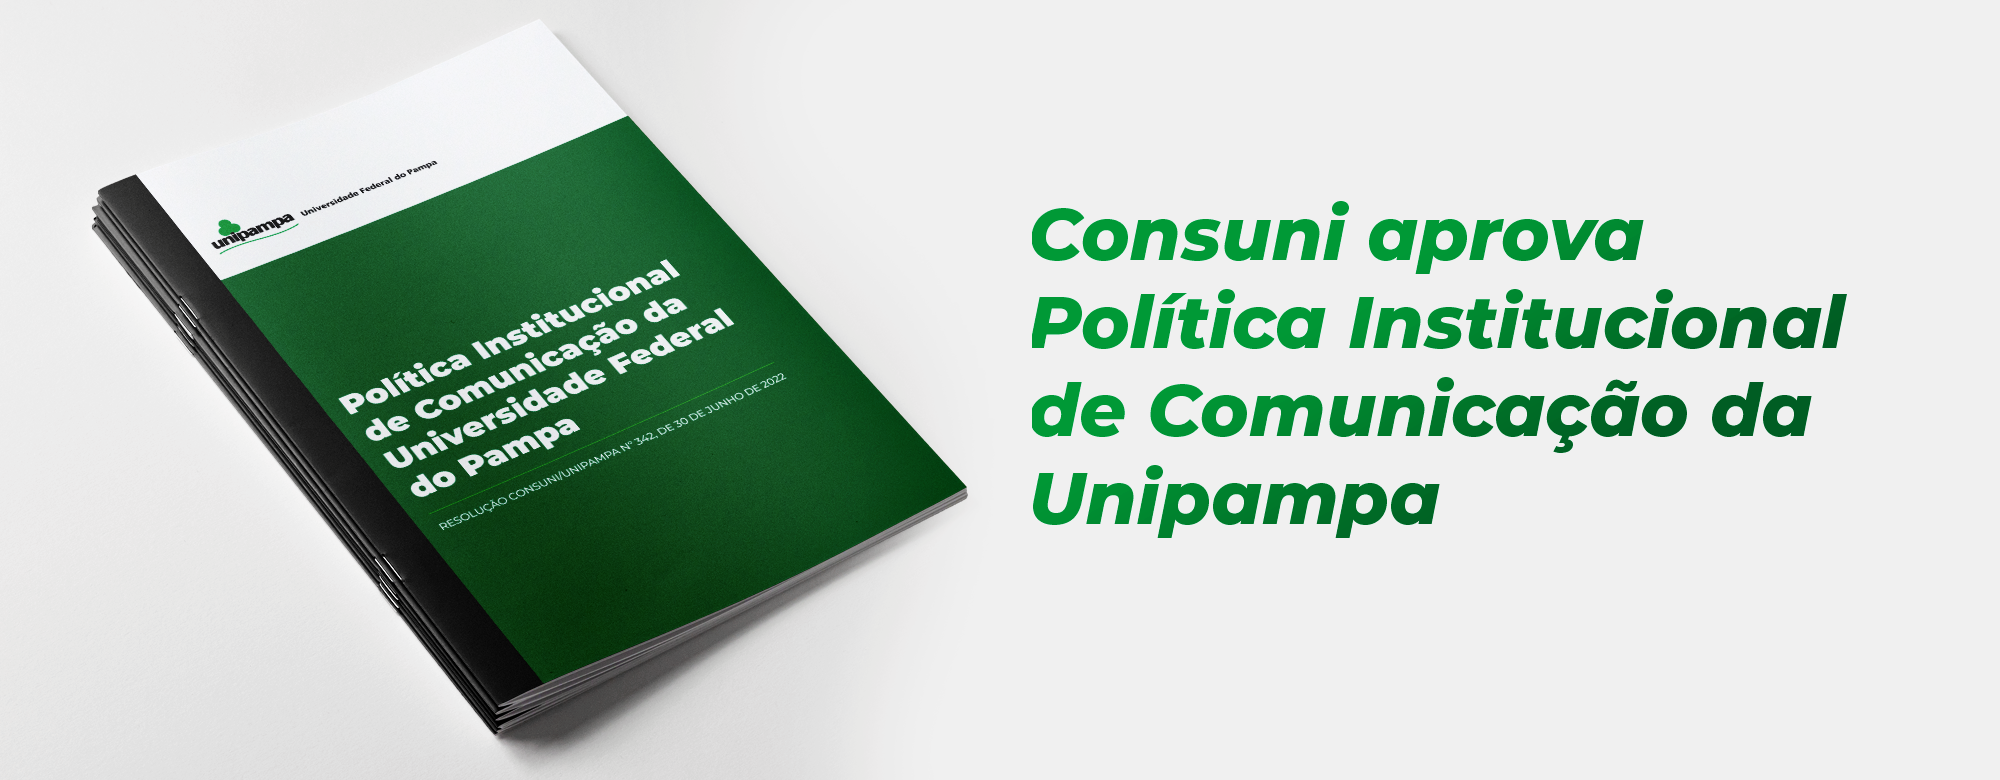 Consuni aprova Política Institucional de Comunicação da Unipampa